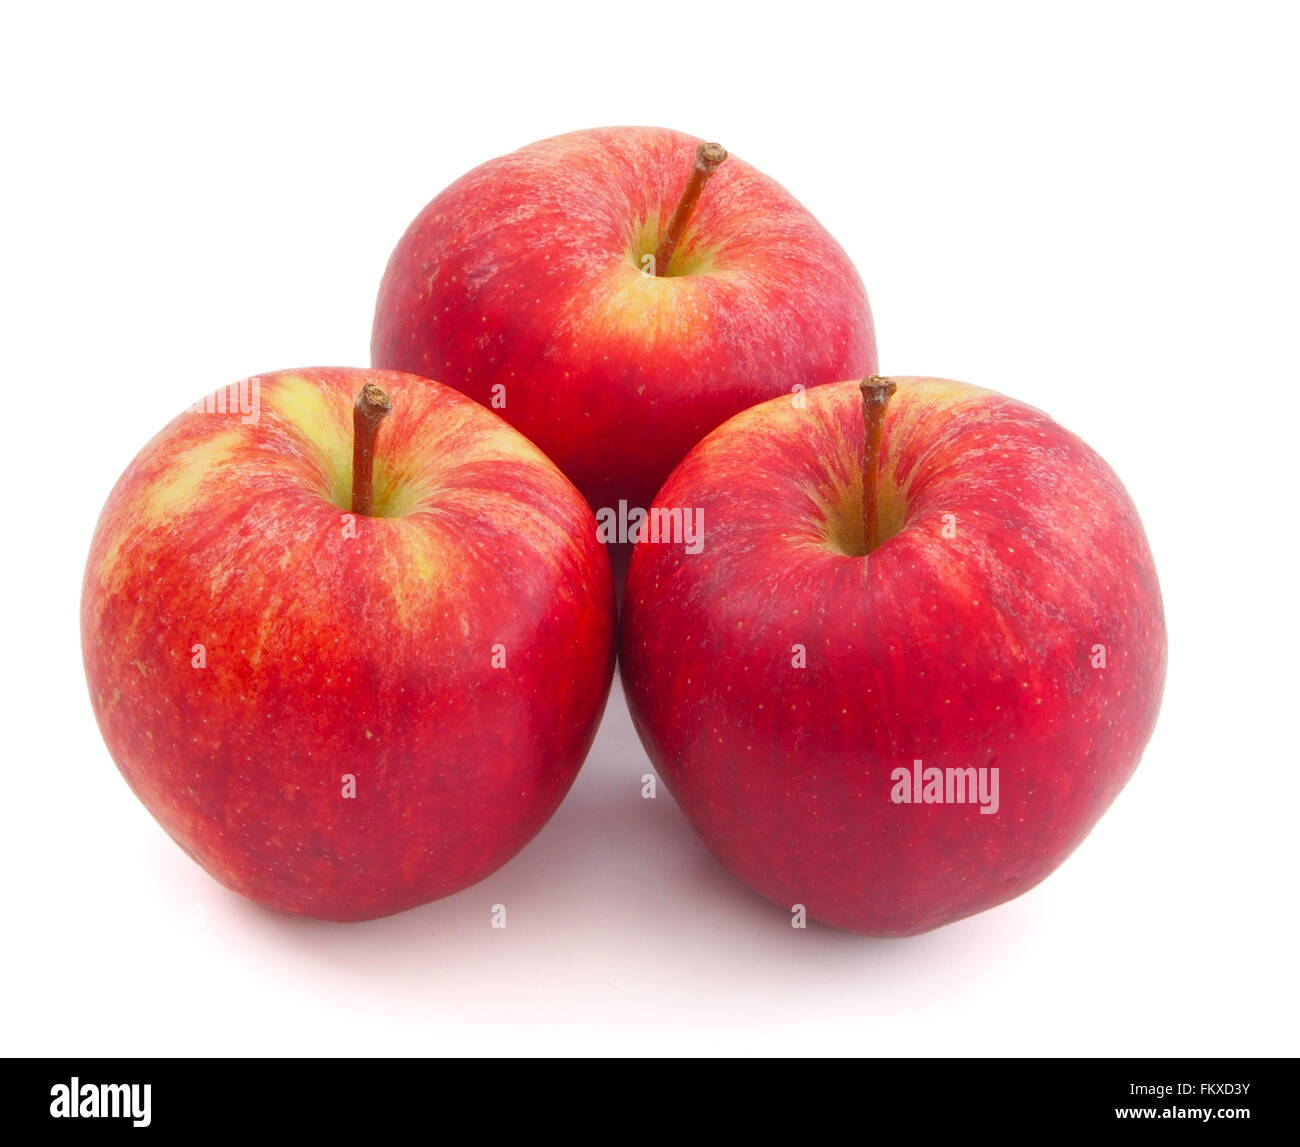 Drei rote Gala Äpfel isoliert auf einem weißen Hintergrund. Stockfoto